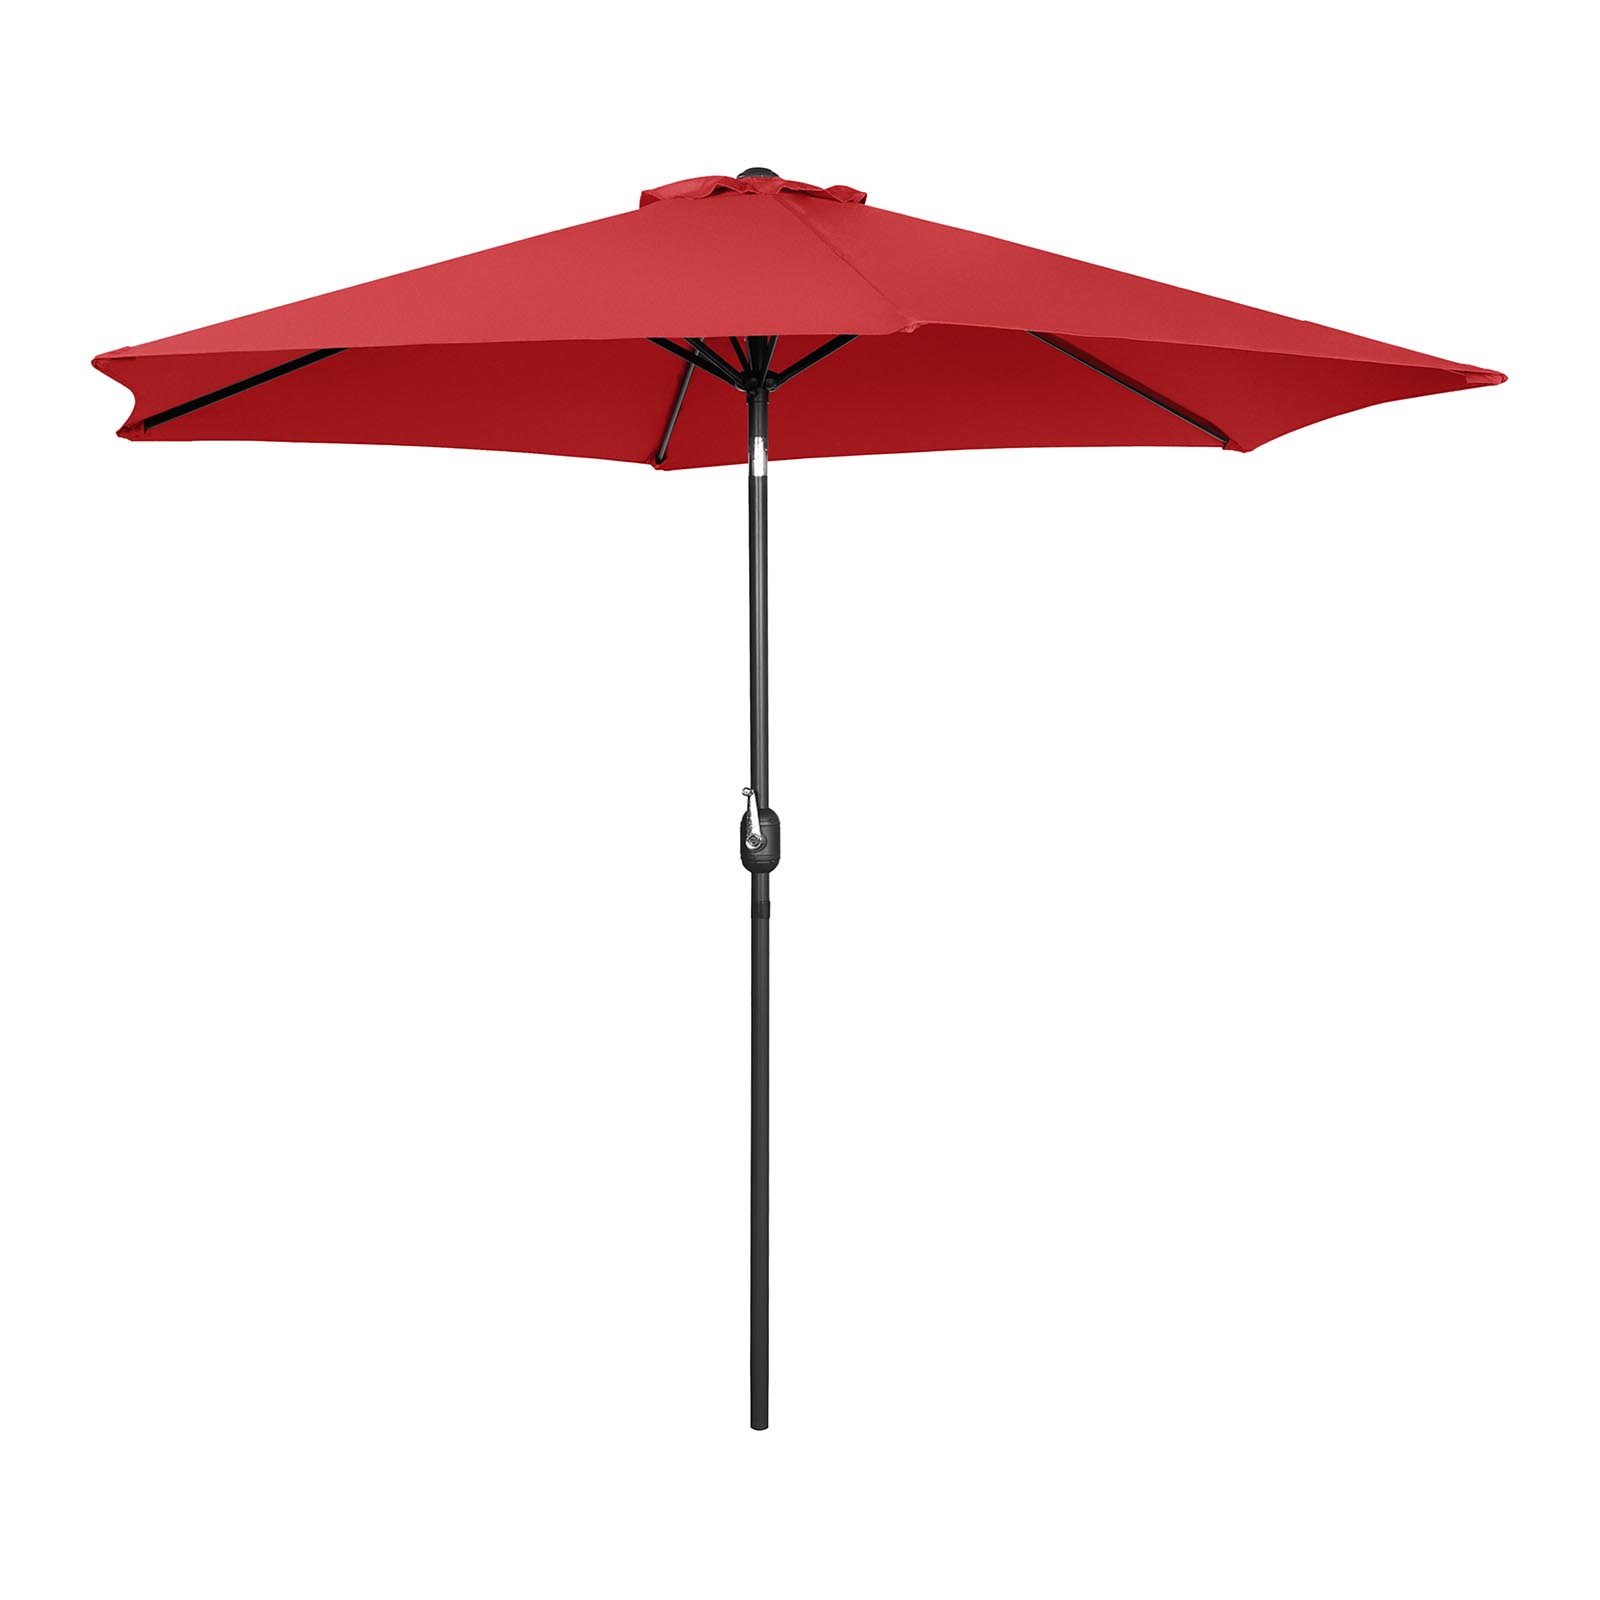 Sonnenschirm groß - rot - sechseckig - Ø 300 cm - neigbar